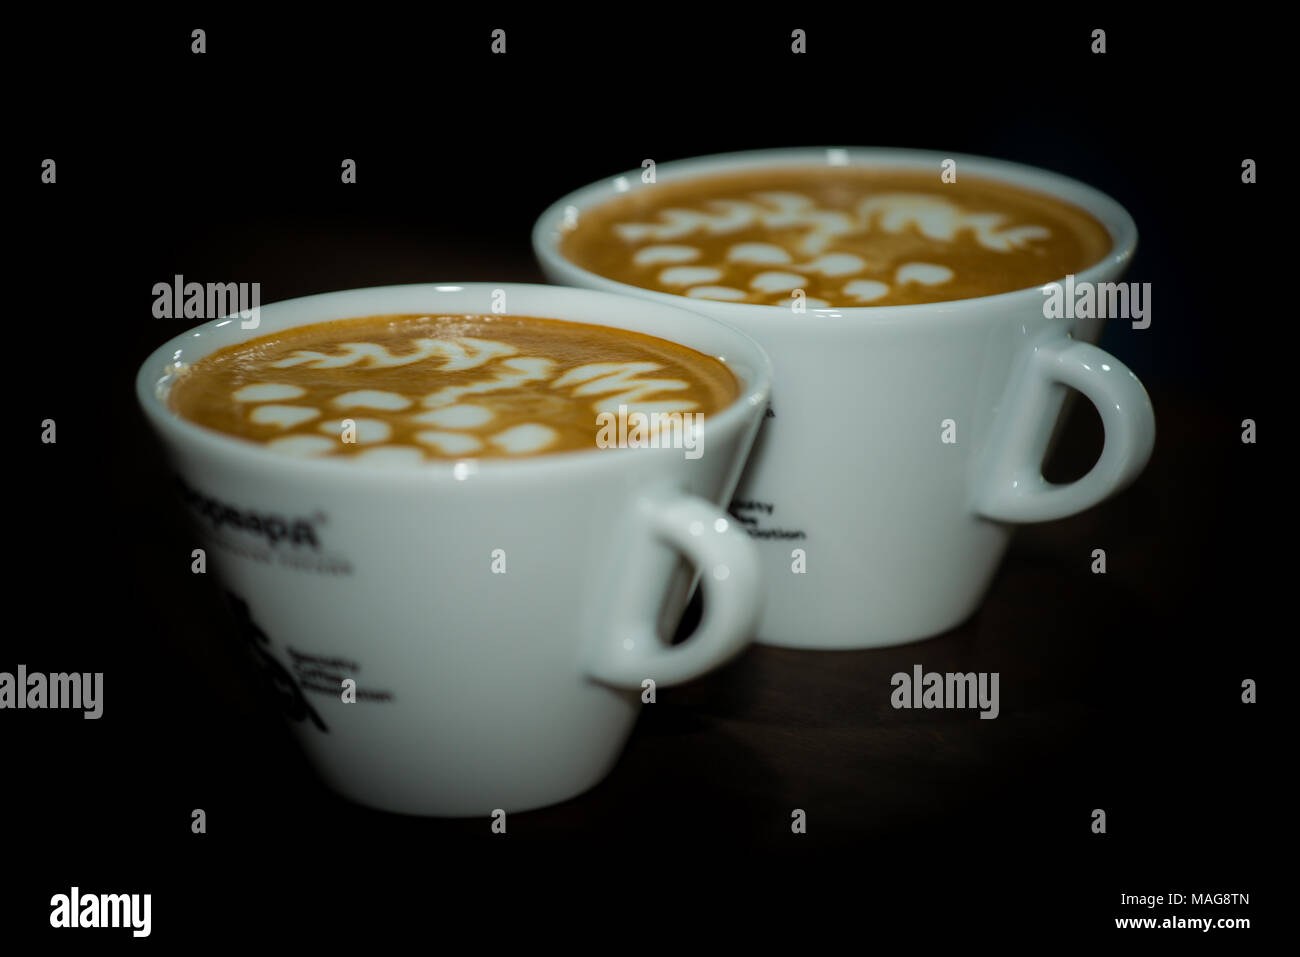 Tassen Kaffee und gedämpfte Milch trinken, mit Latte-art Bilder an der Oberfläche Stockfoto